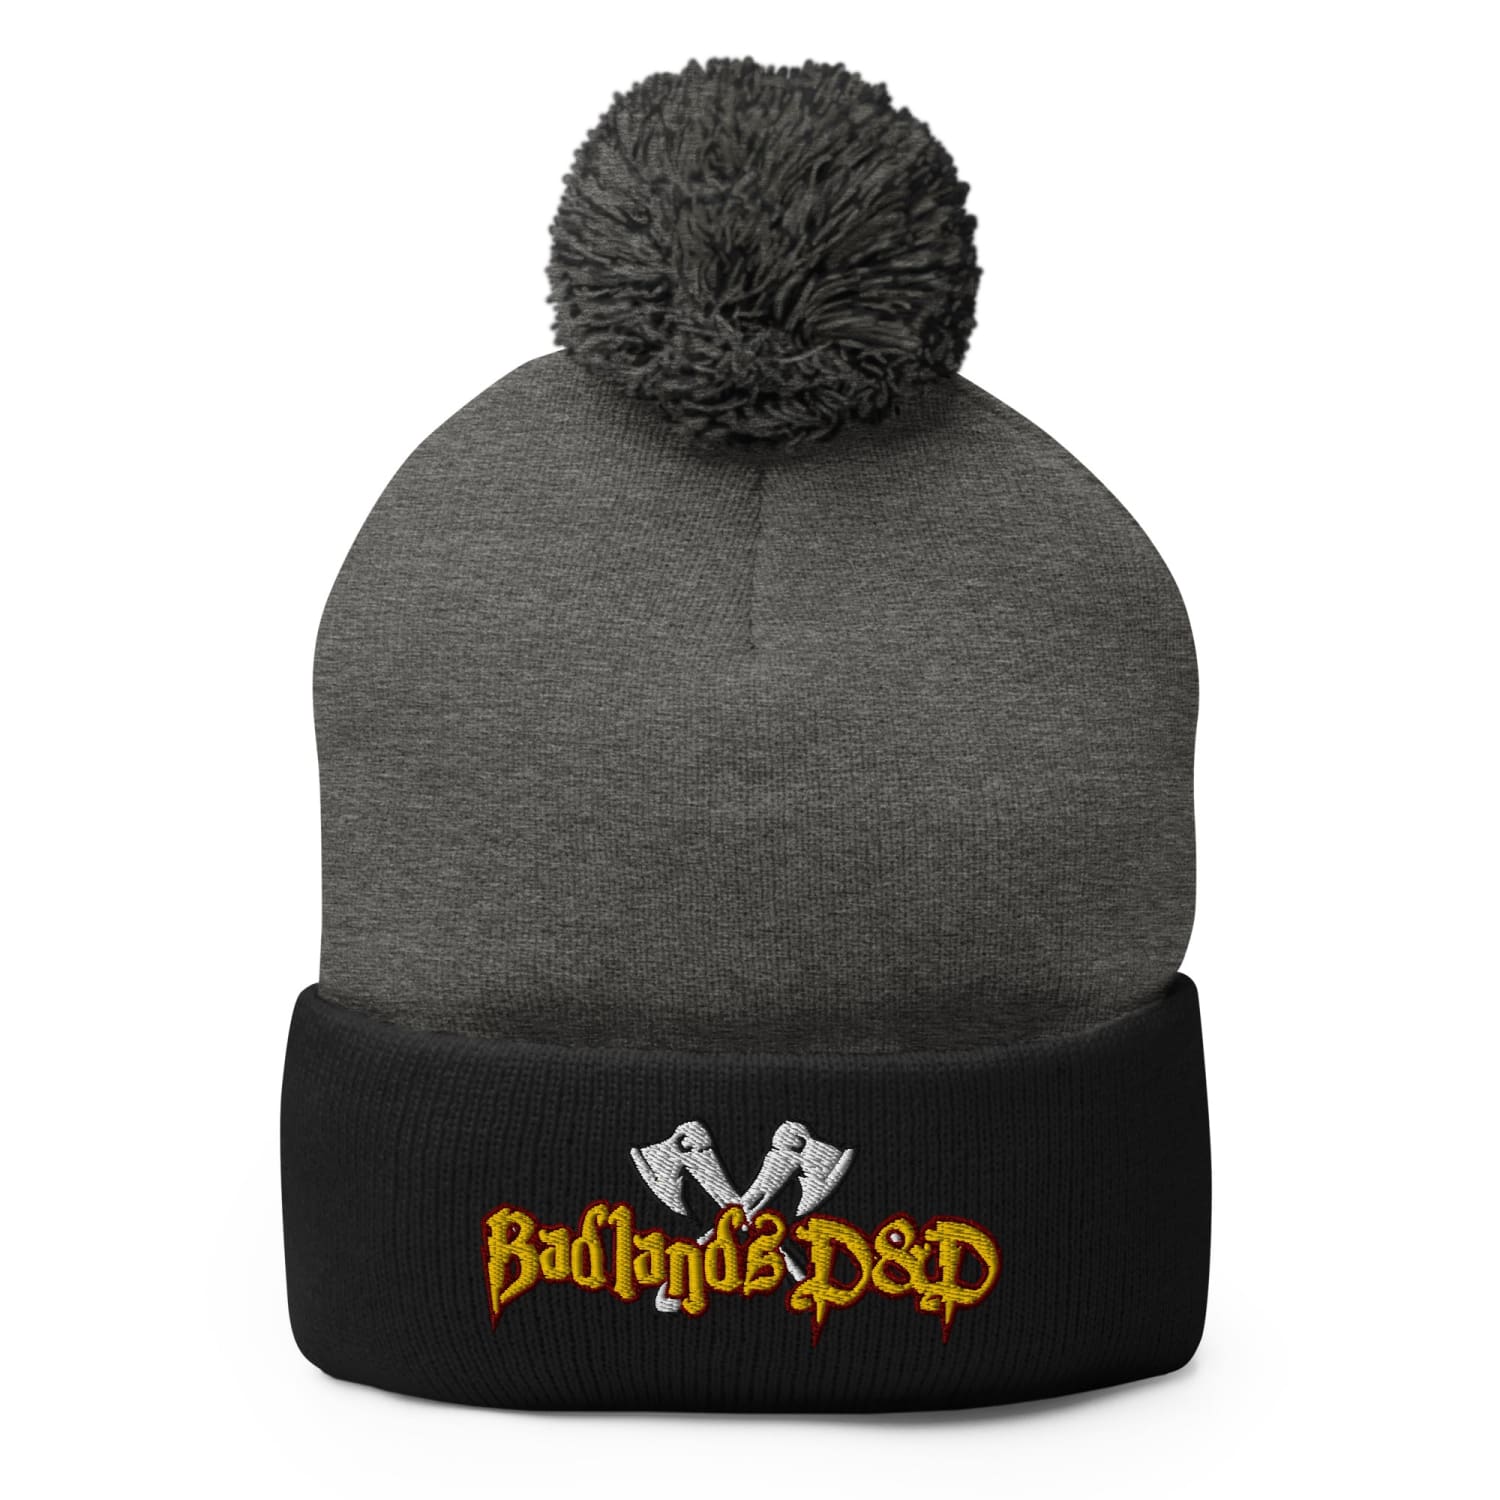 Badlands D&D Logo Pom-Pom Knit Beanie / Tuque - Dark Heather Grey/ Black